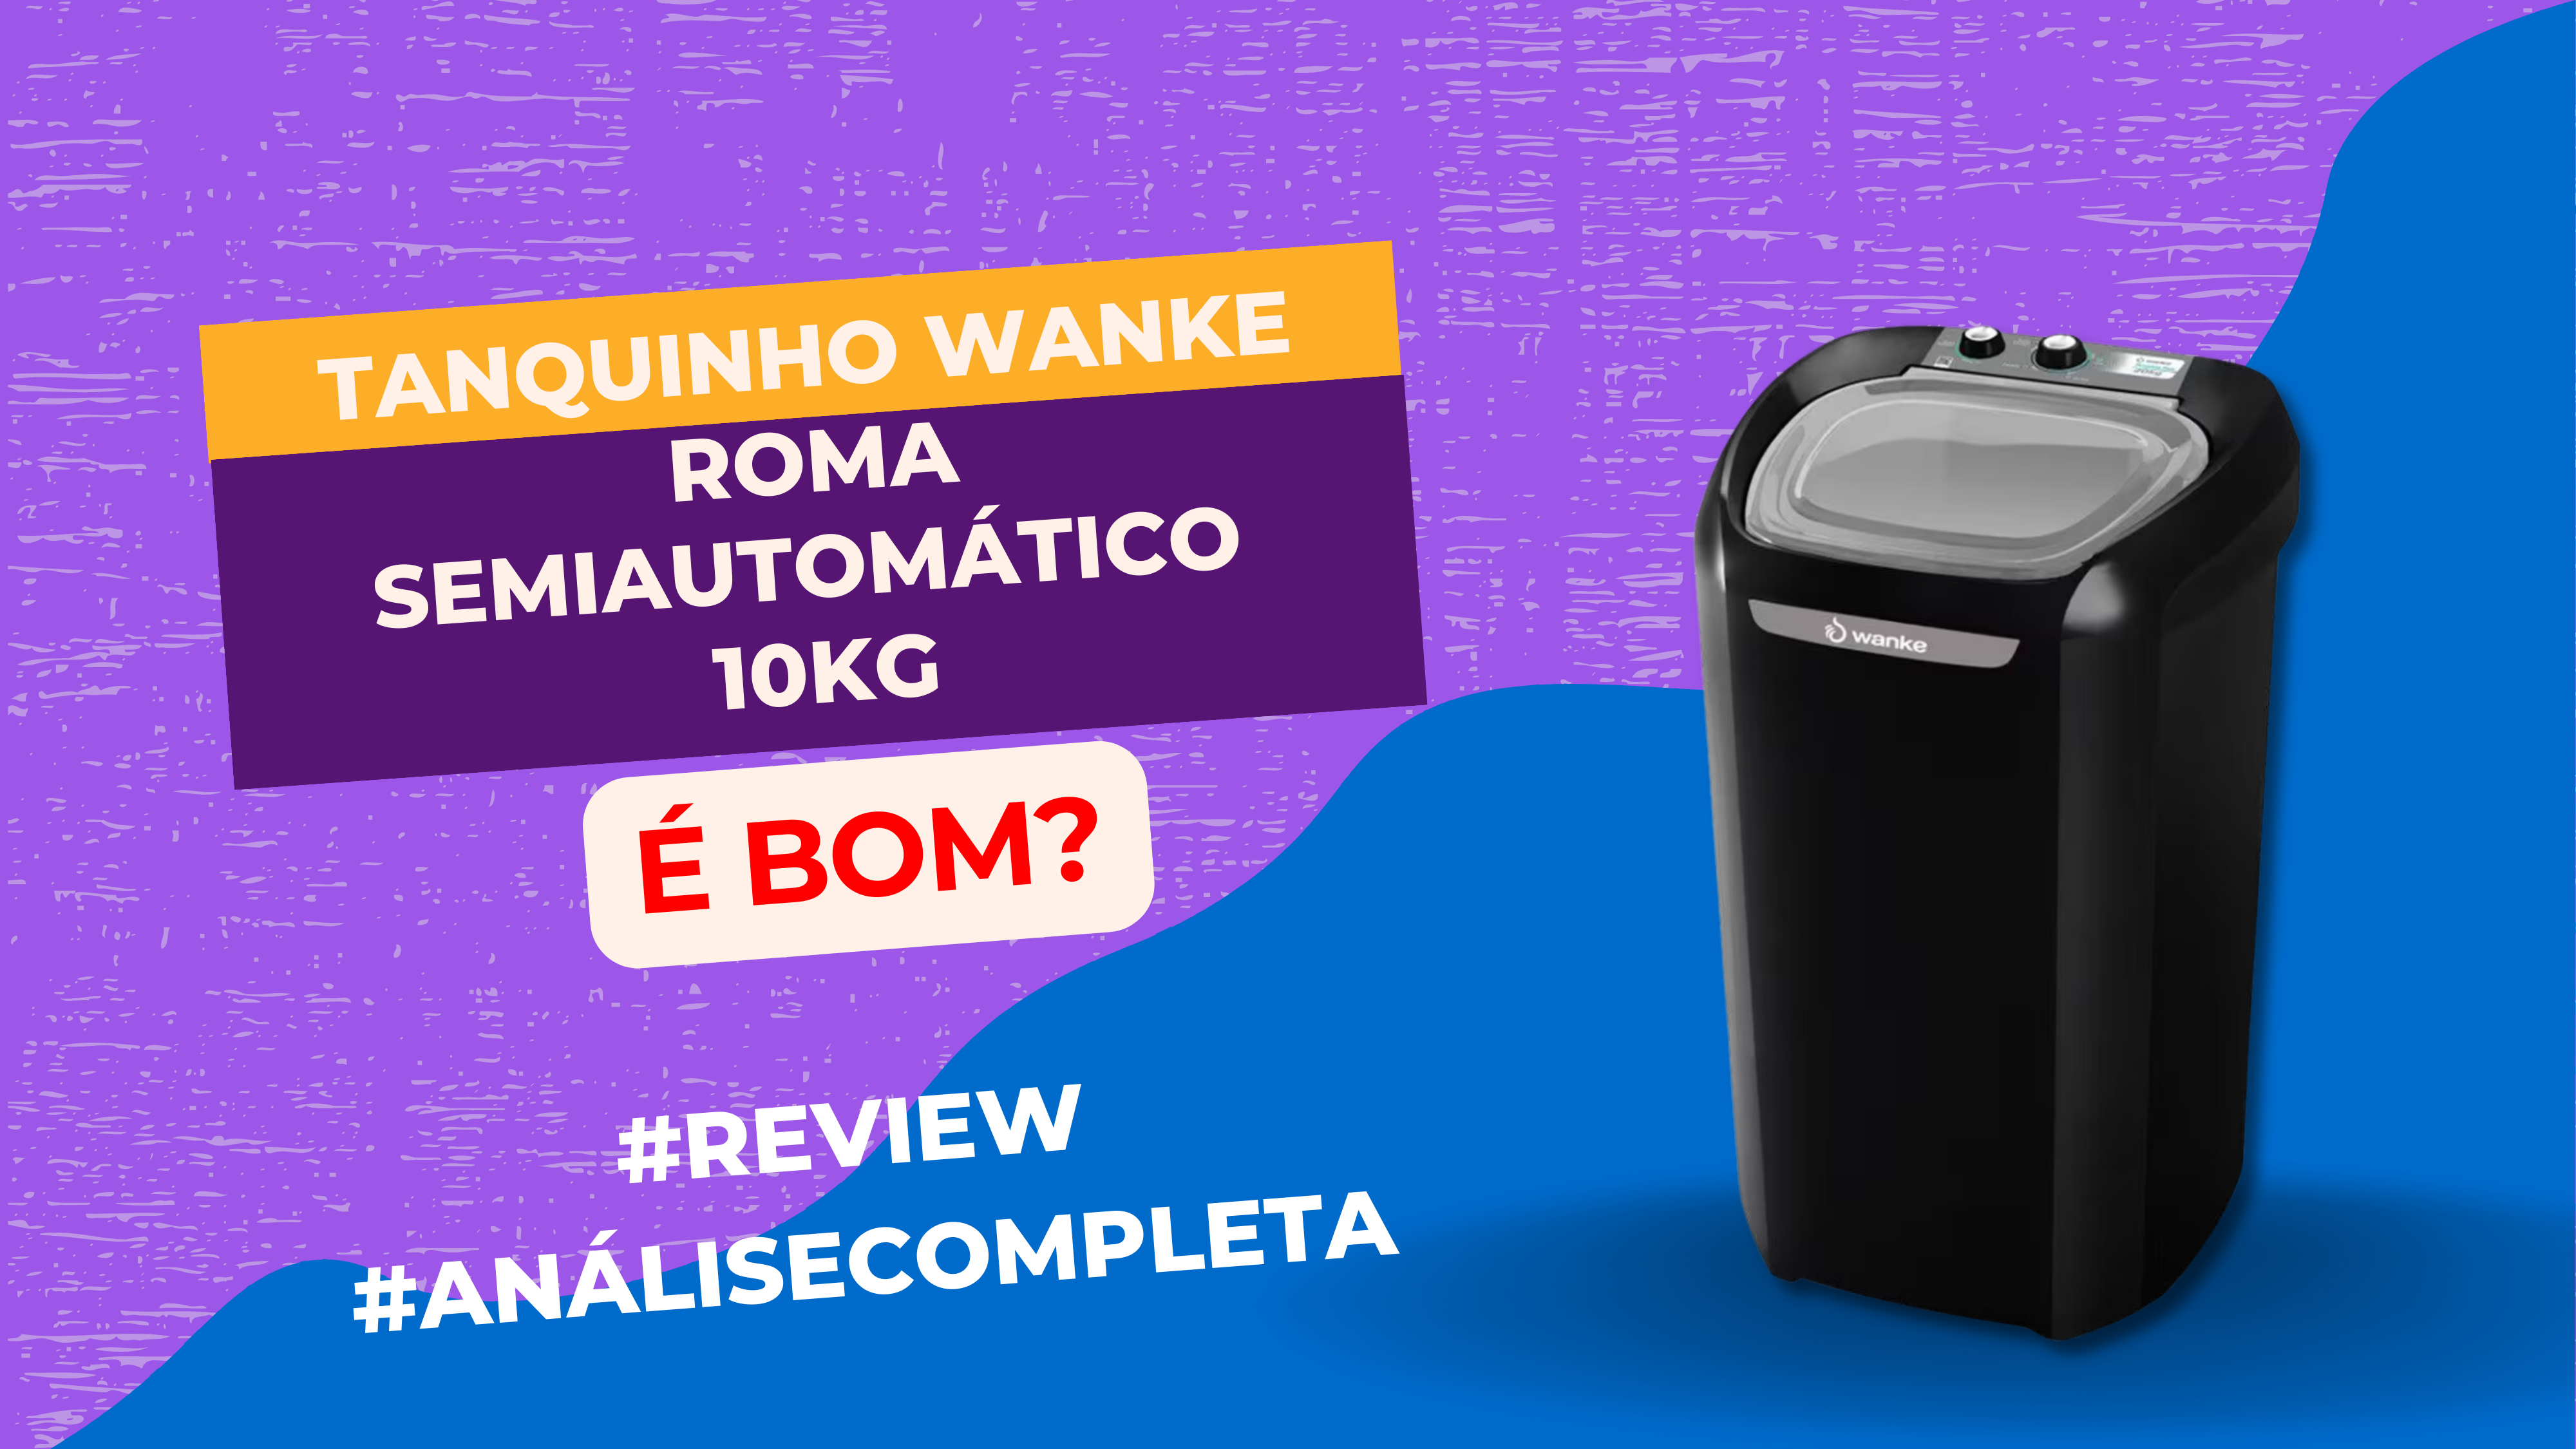 Imagem com Tanquinho Wanke Roma Semiautomático 10kg